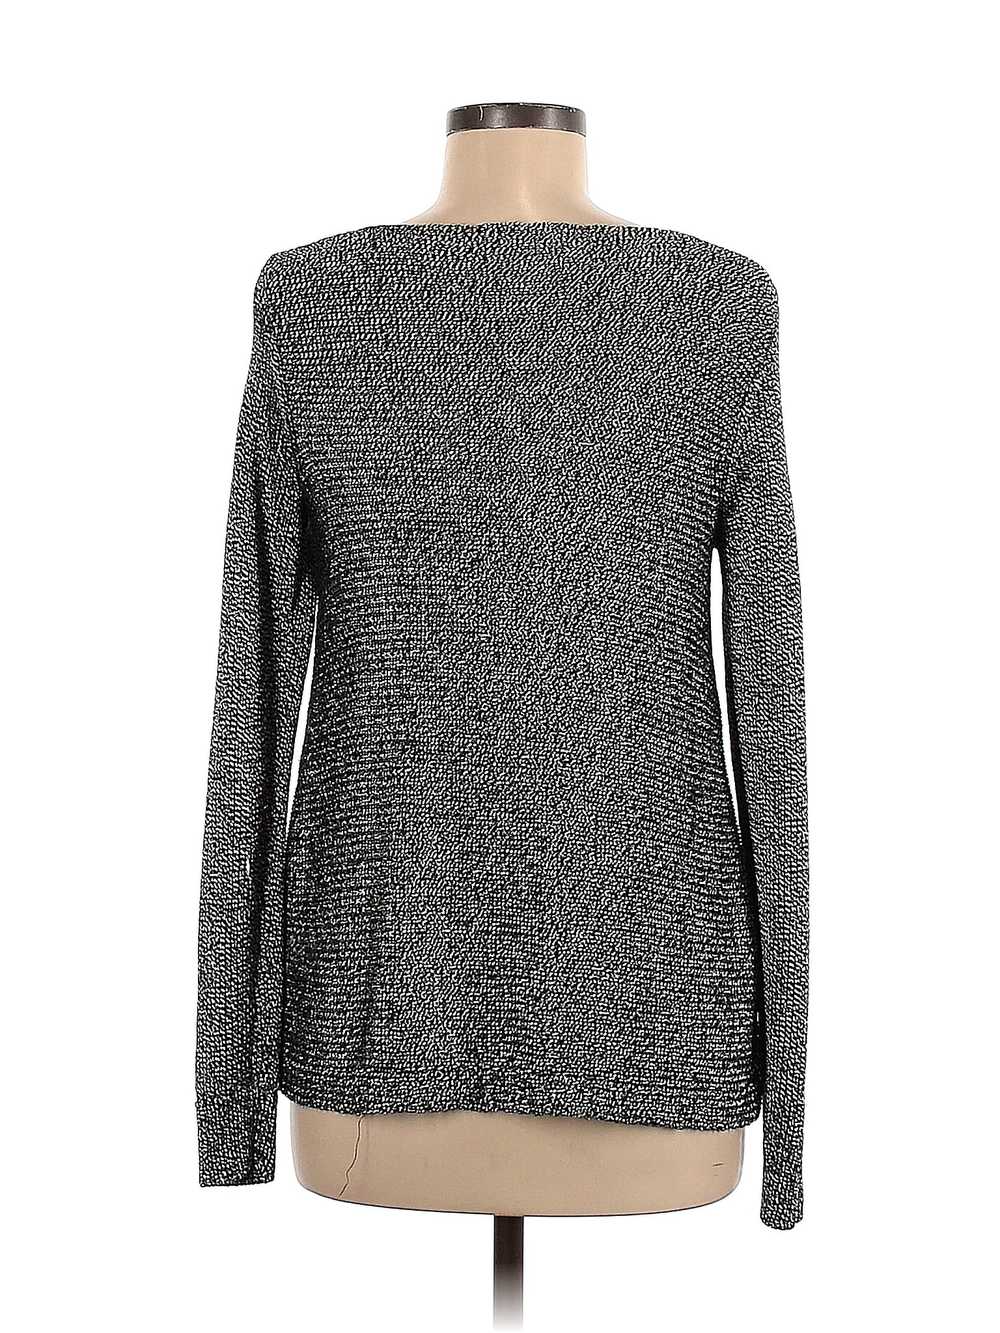 Club Monaco Women Gray Pullover Sweater M - image 2